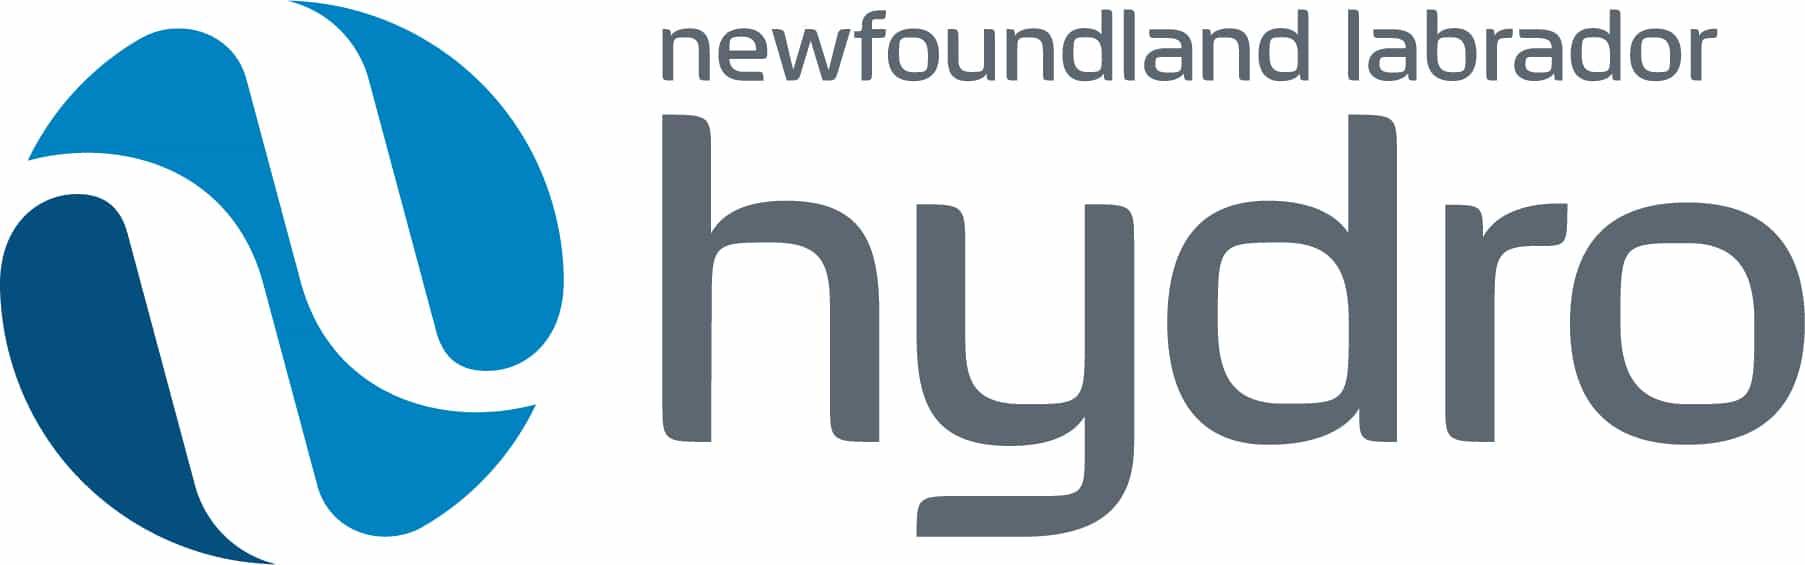 Newfoundland & Labrador Hydro